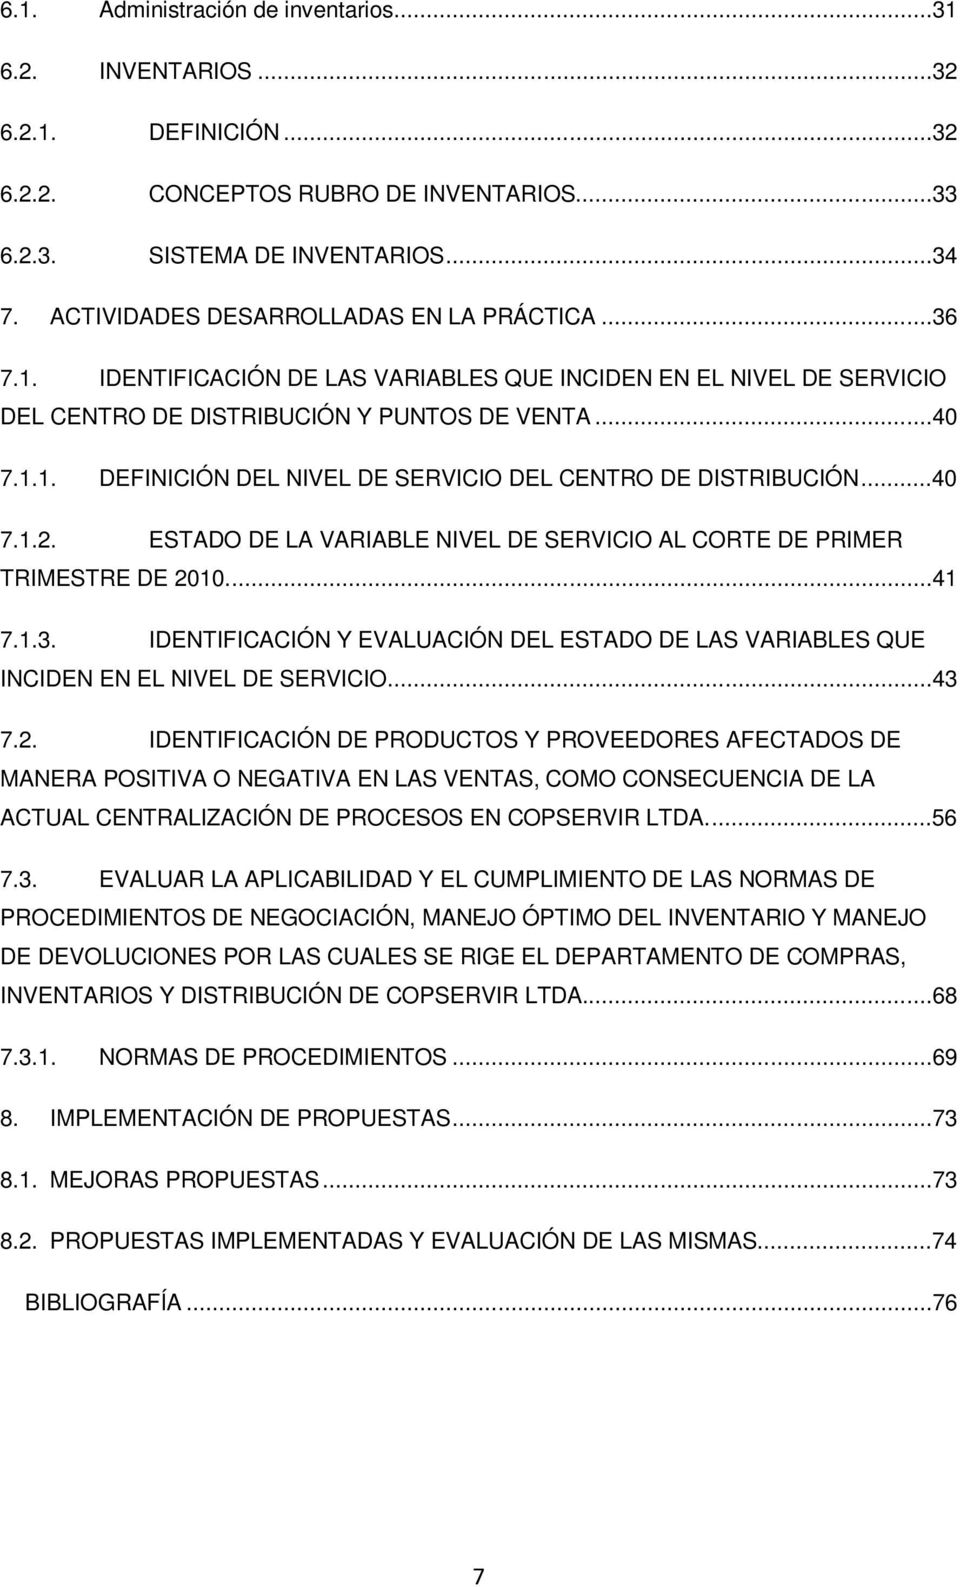 ..40 7.1.2. ESTADO DE LA VARIABLE NIVEL DE SERVICIO AL CORTE DE PRIMER TRIMESTRE DE 2010....41 7.1.3. IDENTIFICACIÓN Y EVALUACIÓN DEL ESTADO DE LAS VARIABLES QUE INCIDEN EN EL NIVEL DE SERVICIO...43 7.